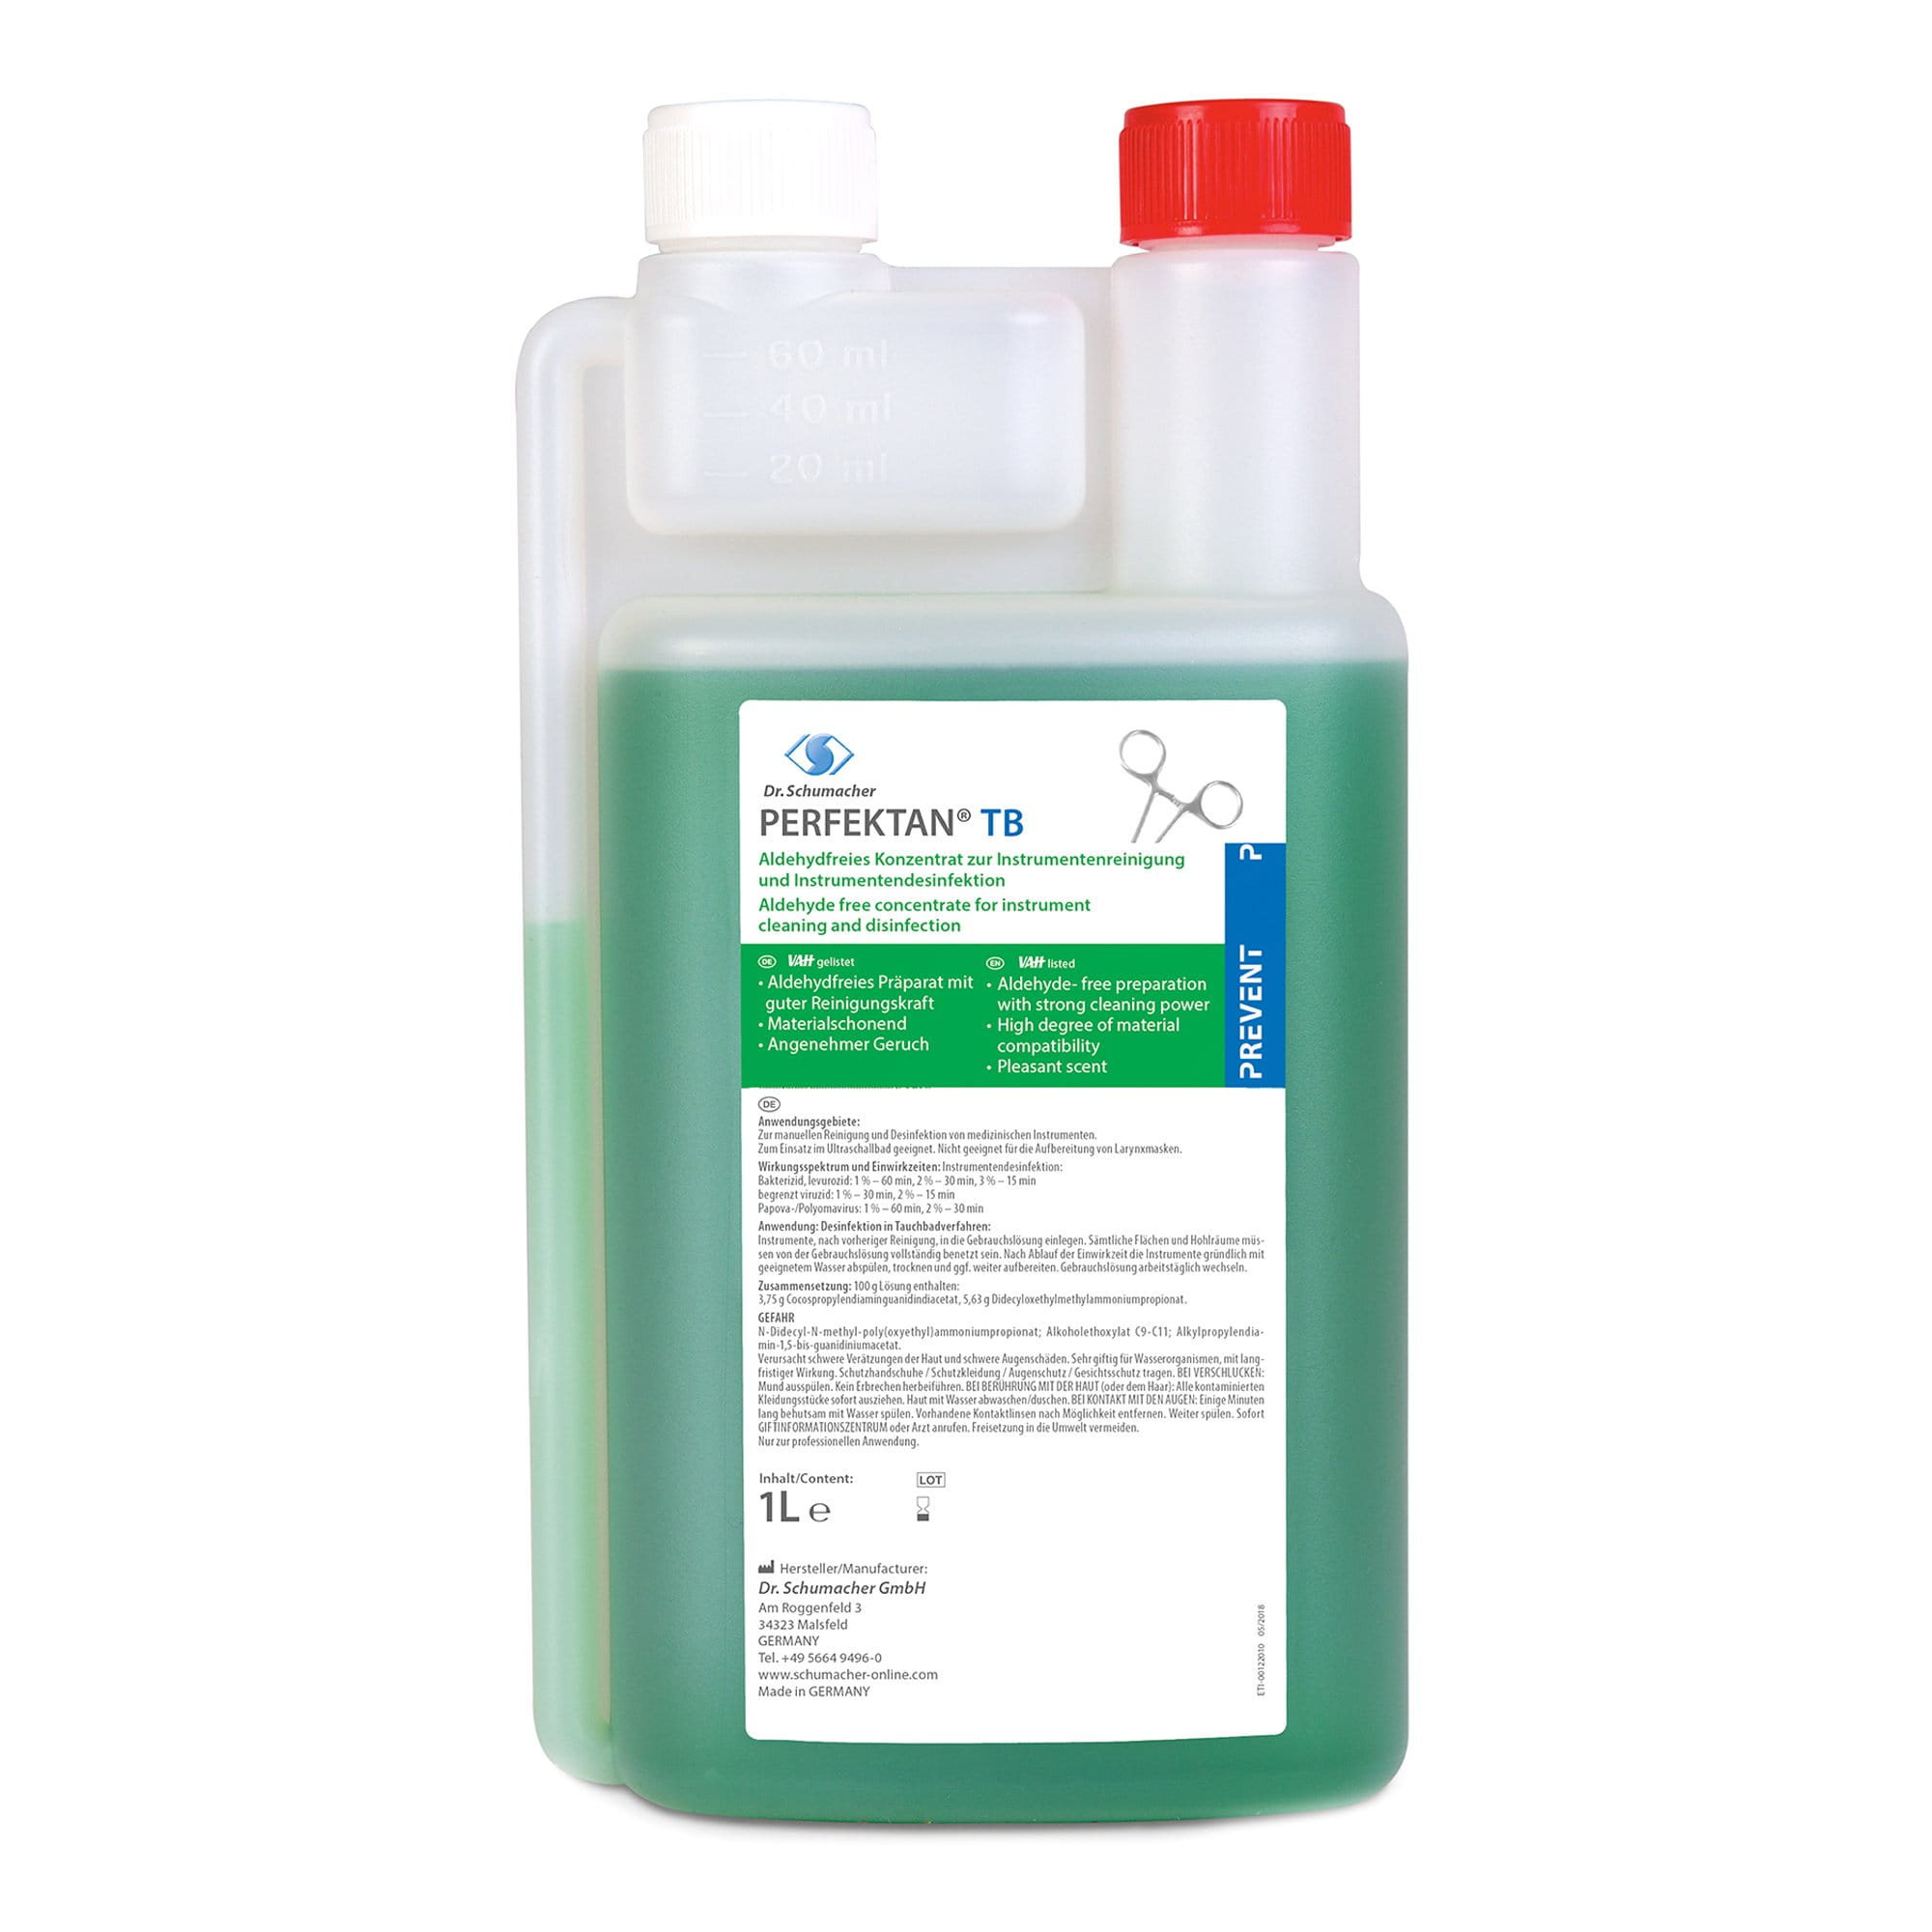 Dr. Schumacher Perfektan TB aldehydfreies Konzentrat Reinigung Desinfektion 1 Liter Flasche 00-122-010_1